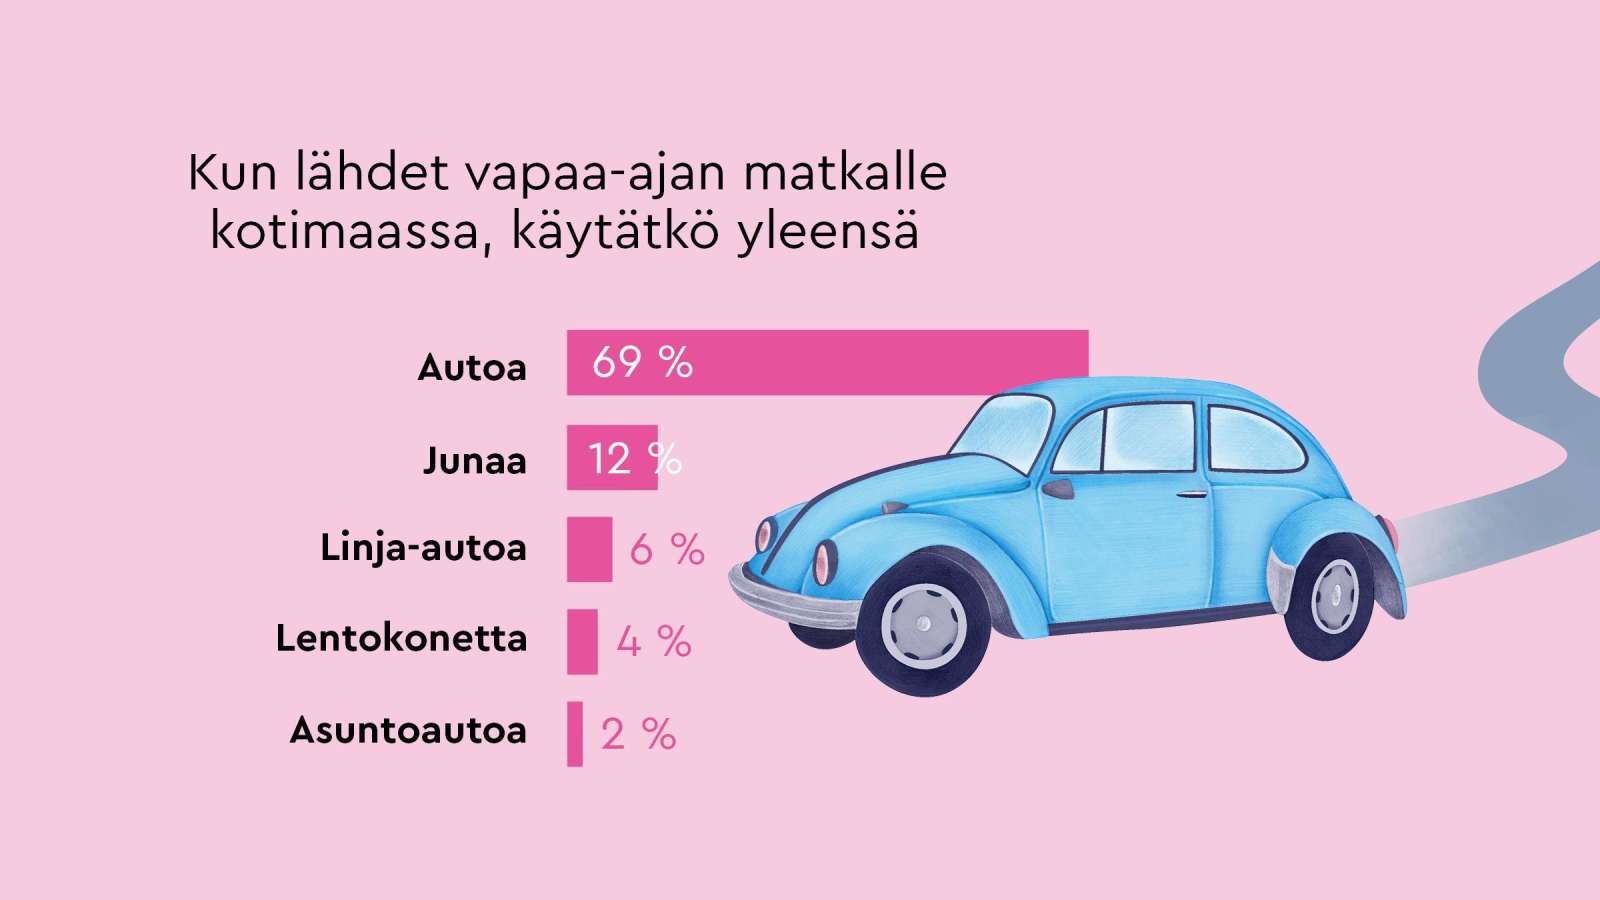 Suomalaiset tekevät vapaa-ajan matkan yleensä autolla